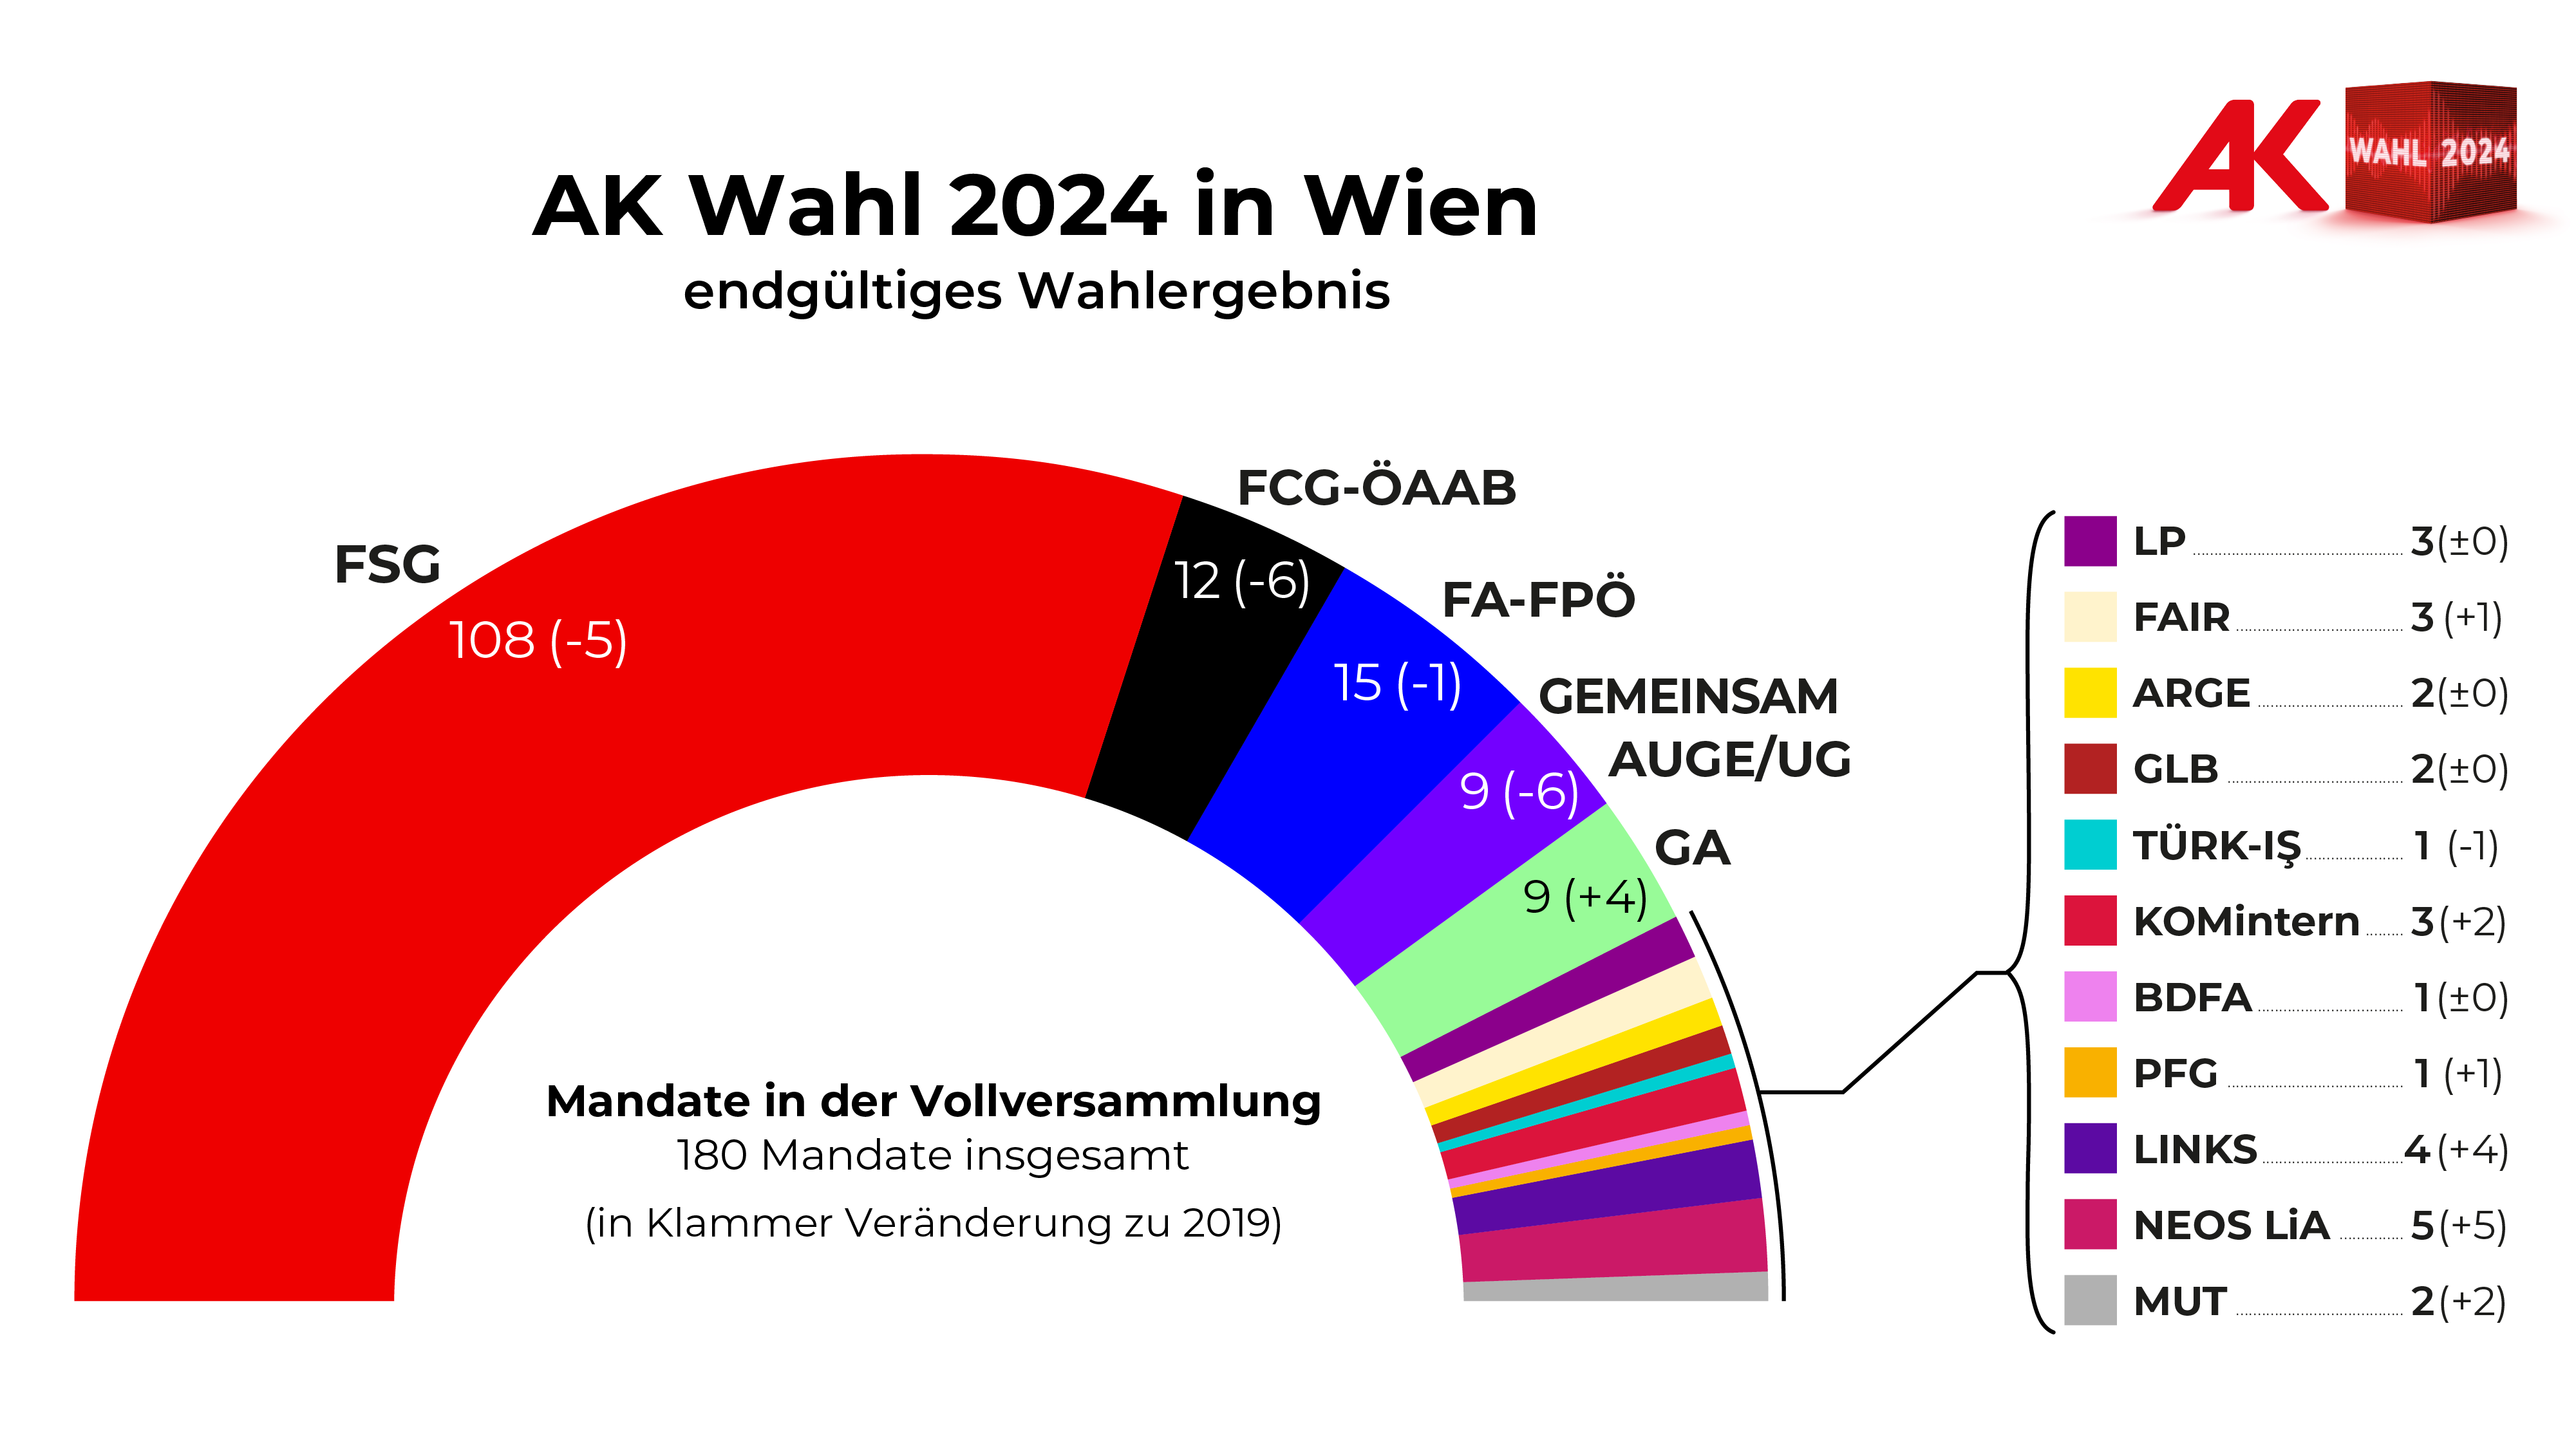 AK-Wahl Wien 2024: Endgültiges Wahlergebnis - Mandate